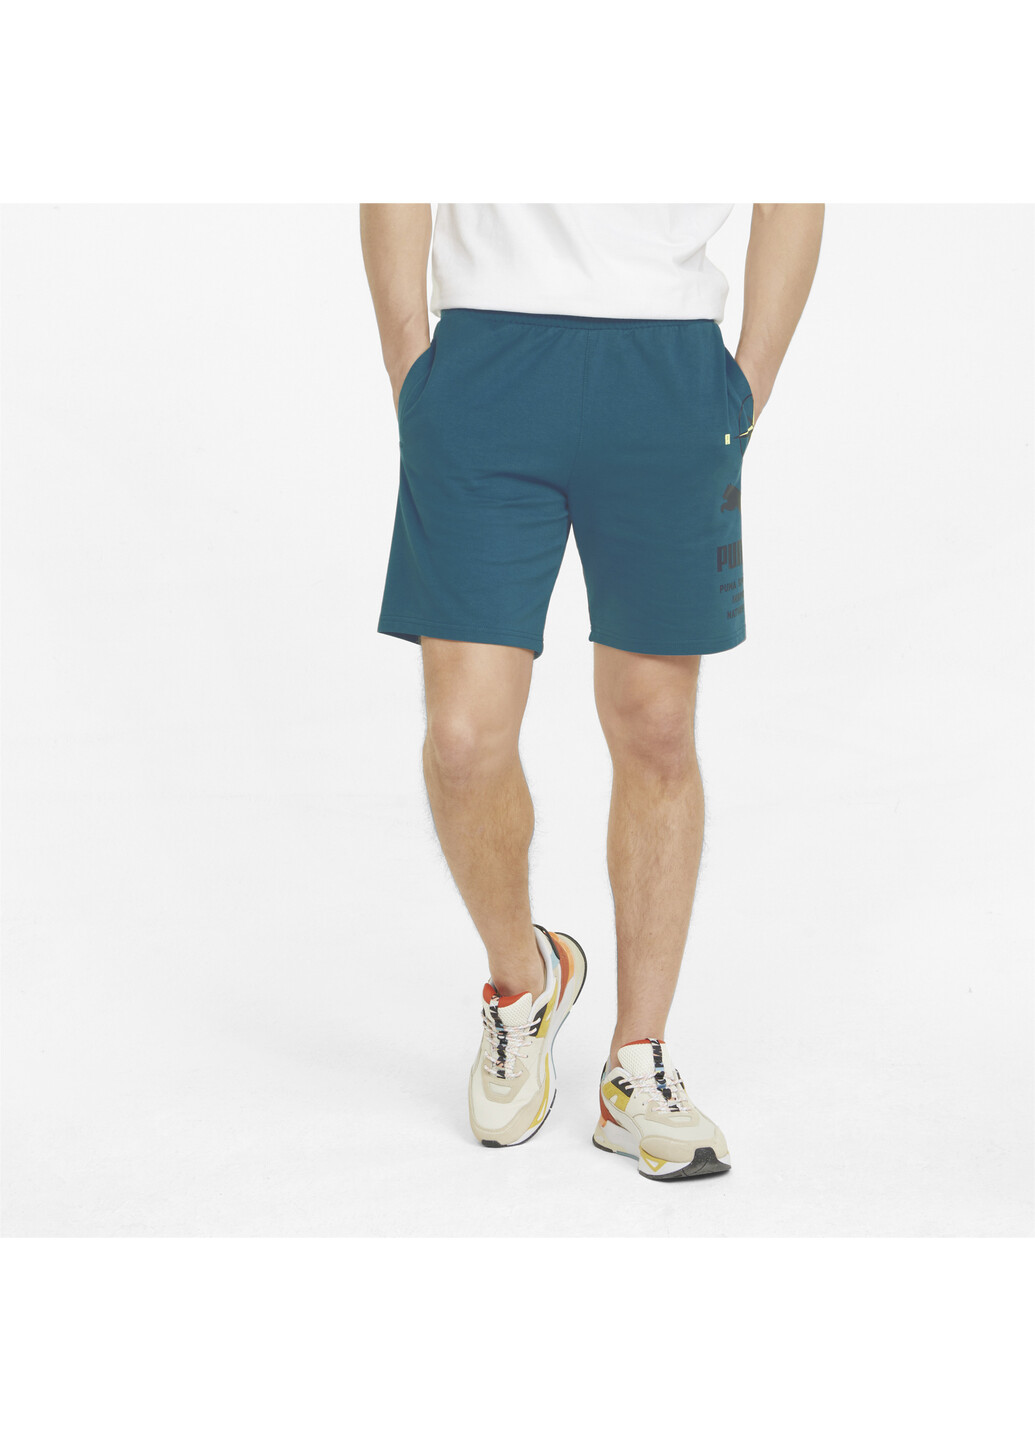 Шорты Nature Camp Graphic Men’s Shorts Puma однотонные синие спортивные хлопок, полиэстер